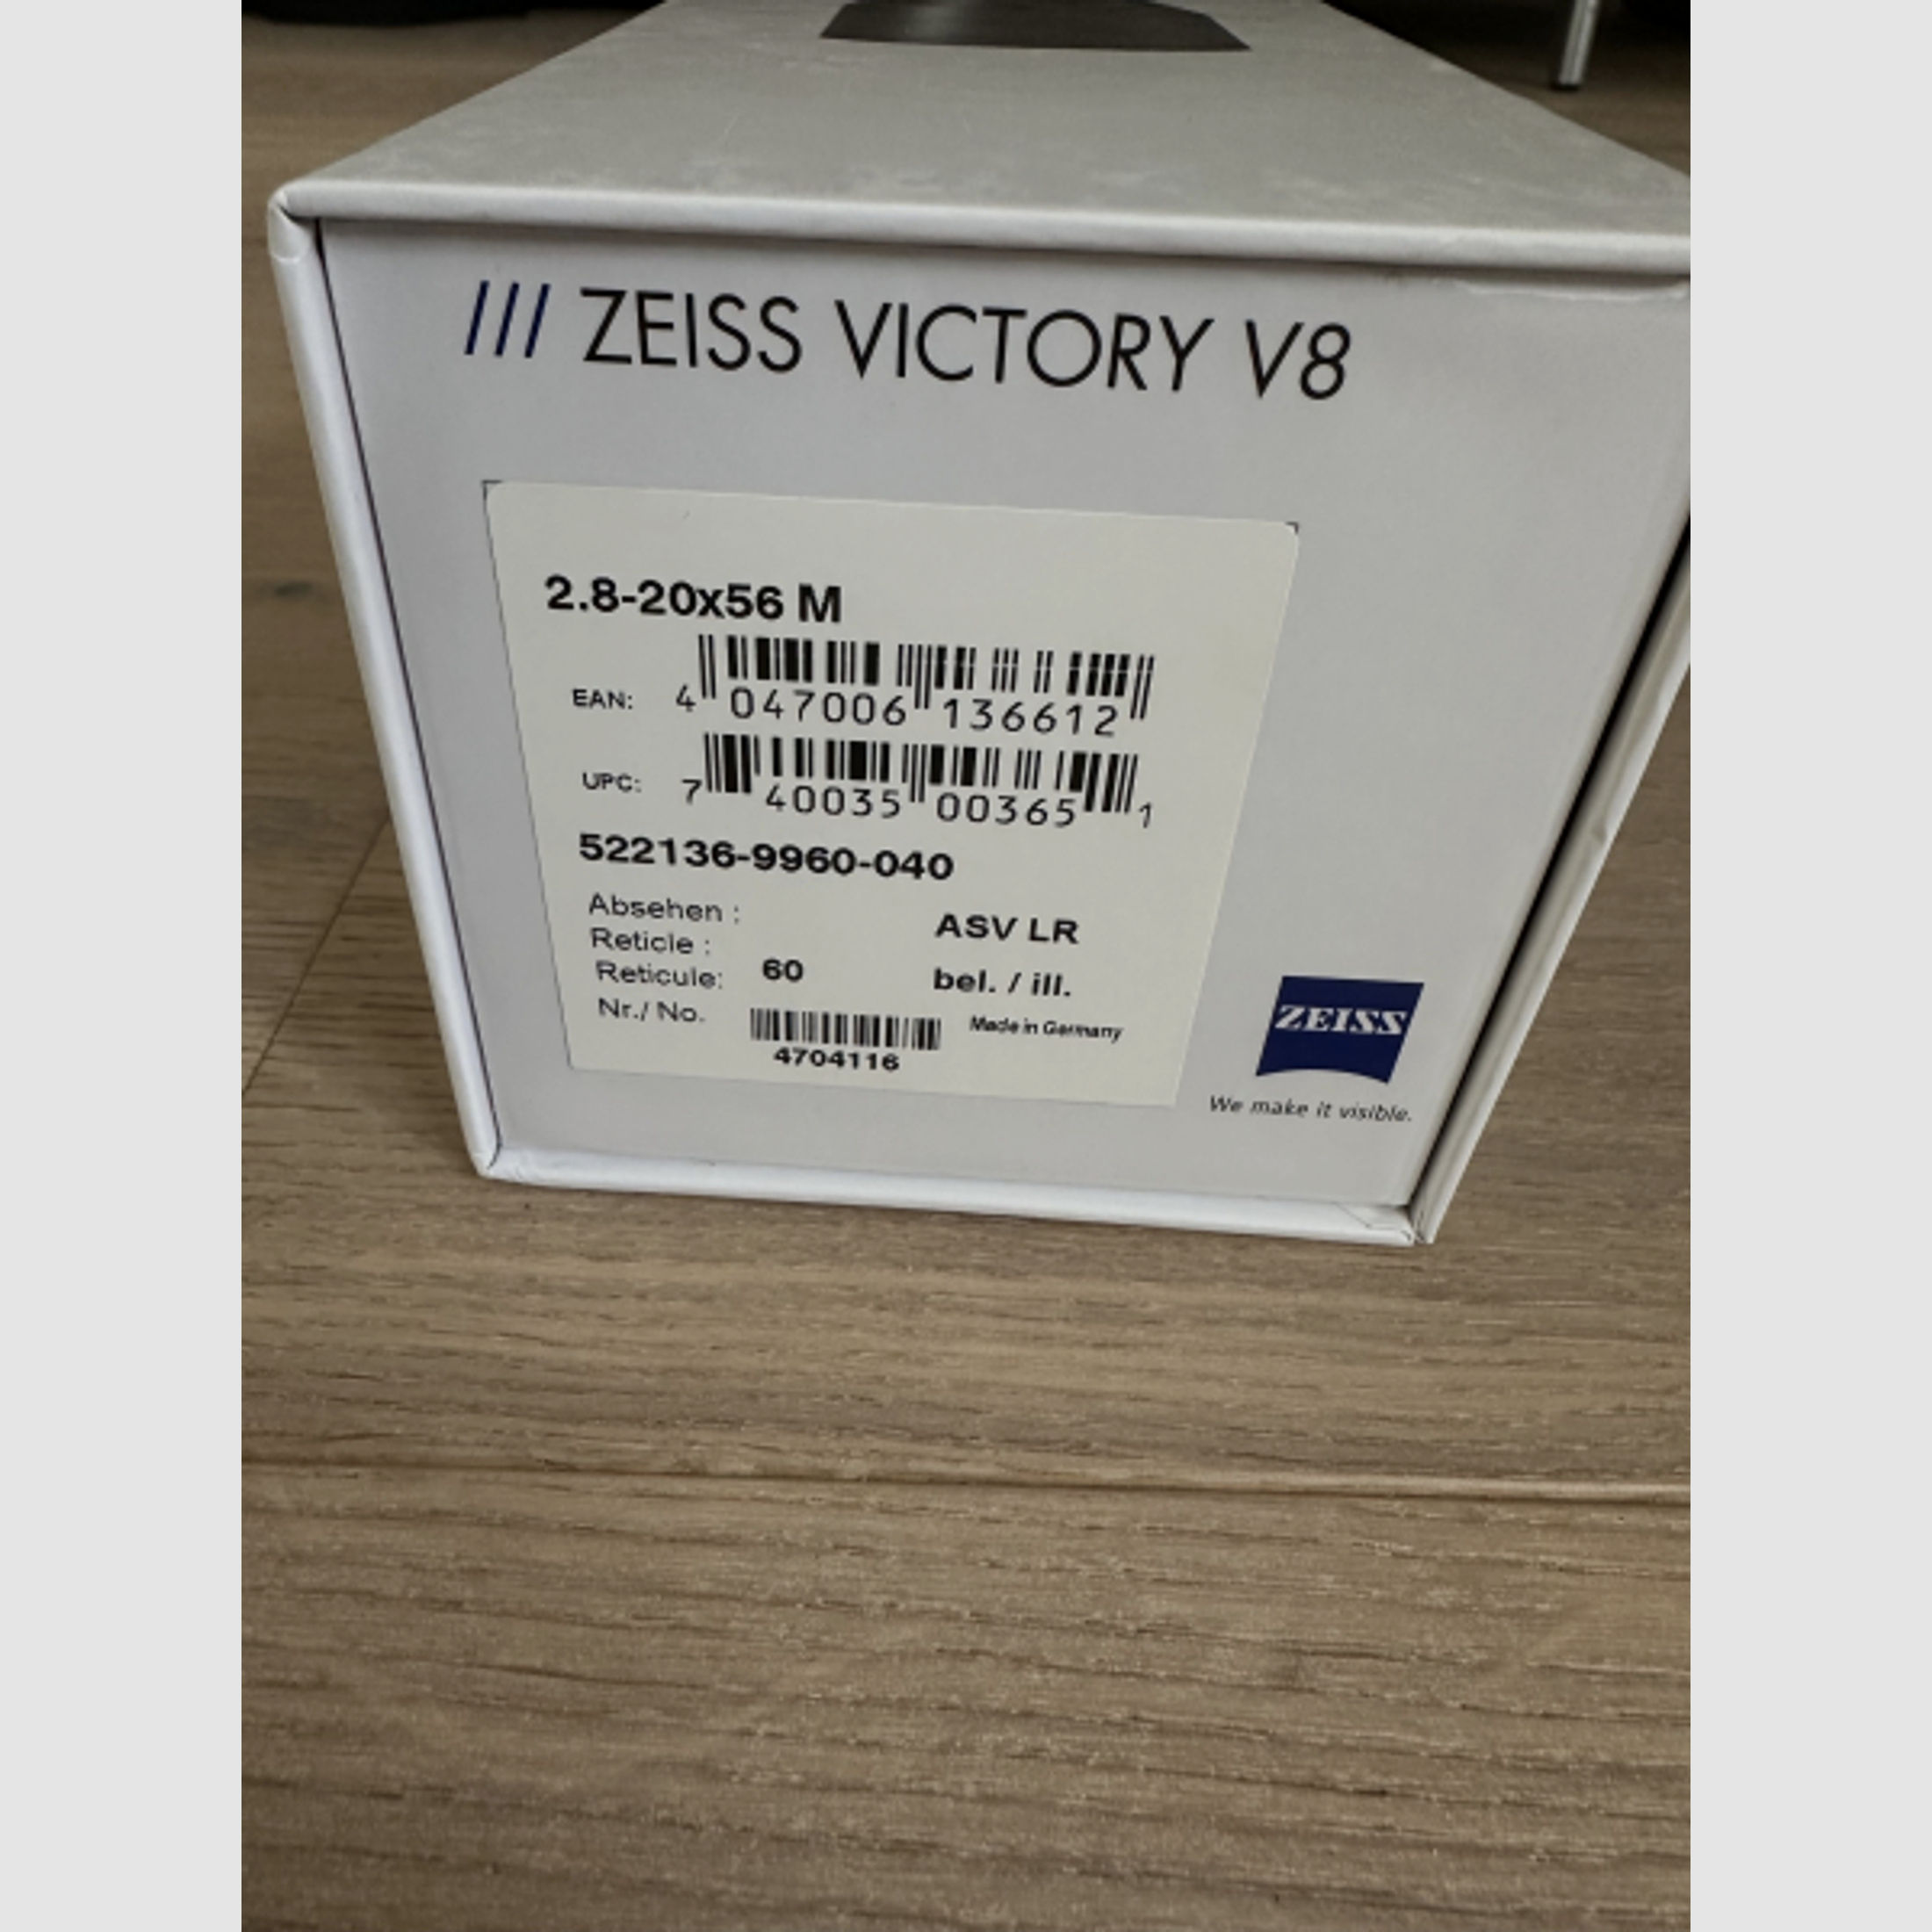 NEU - ZEISS V8 2.8-20x56 M mit Leuchtabsehen 60 und ASV LR